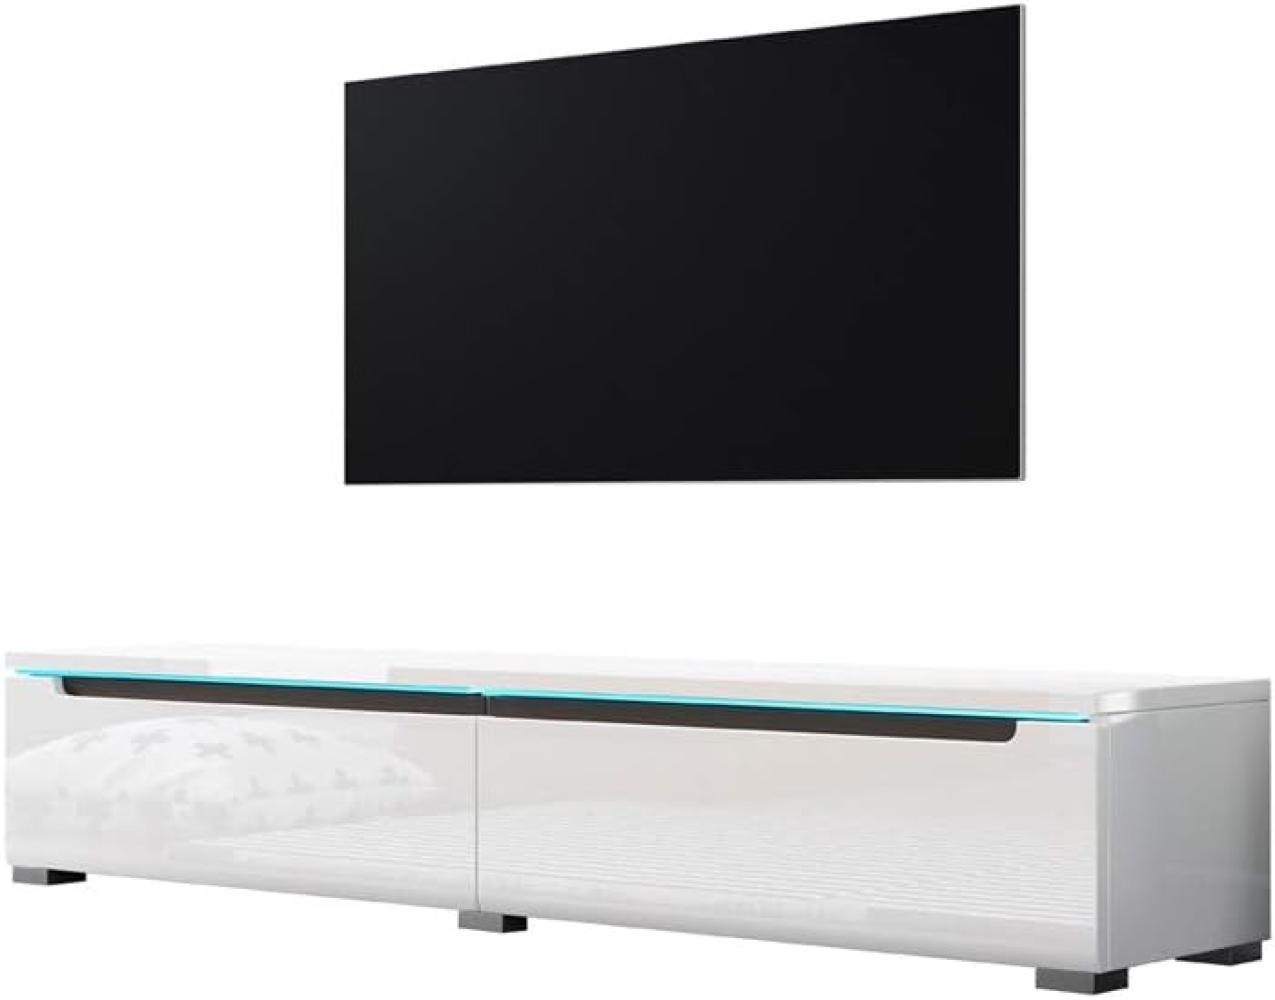 Selsey Swift – Fernsehschrank/TV-Lowboard Hängend oder Stehend 140 cm Weiß Hochglanz Bild 1